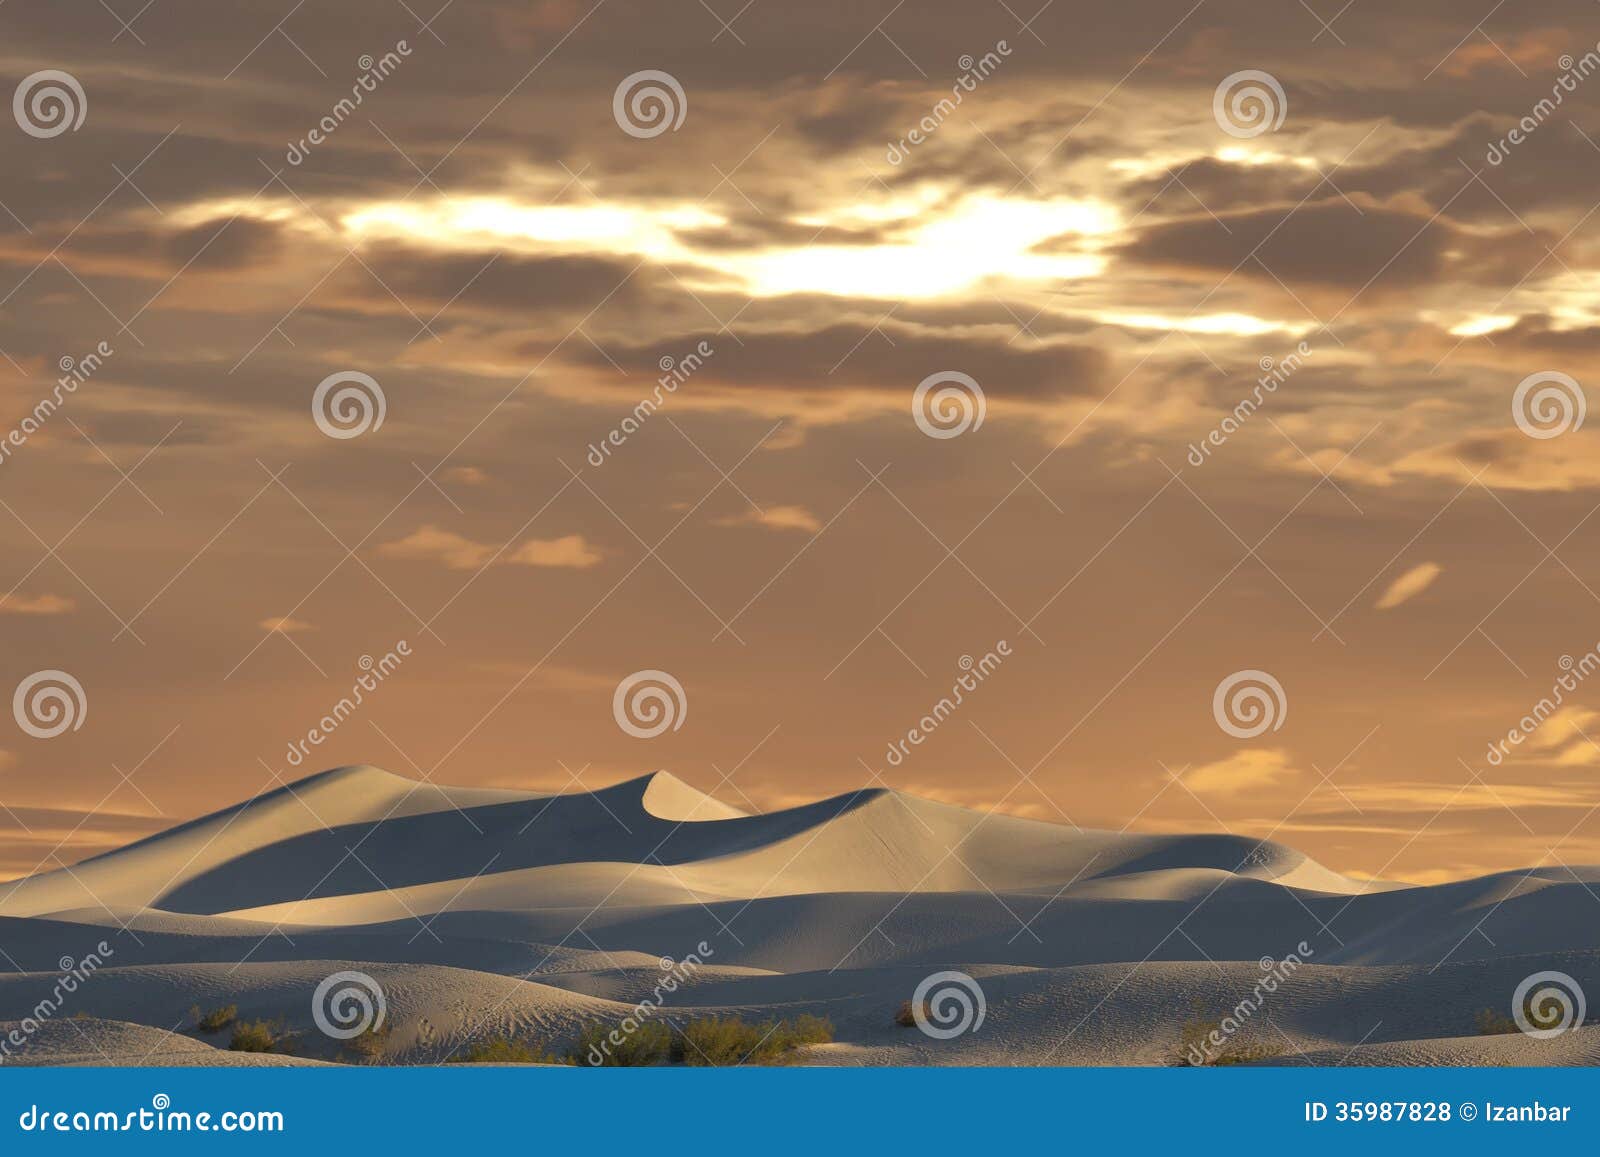 Death valley sand dunes view